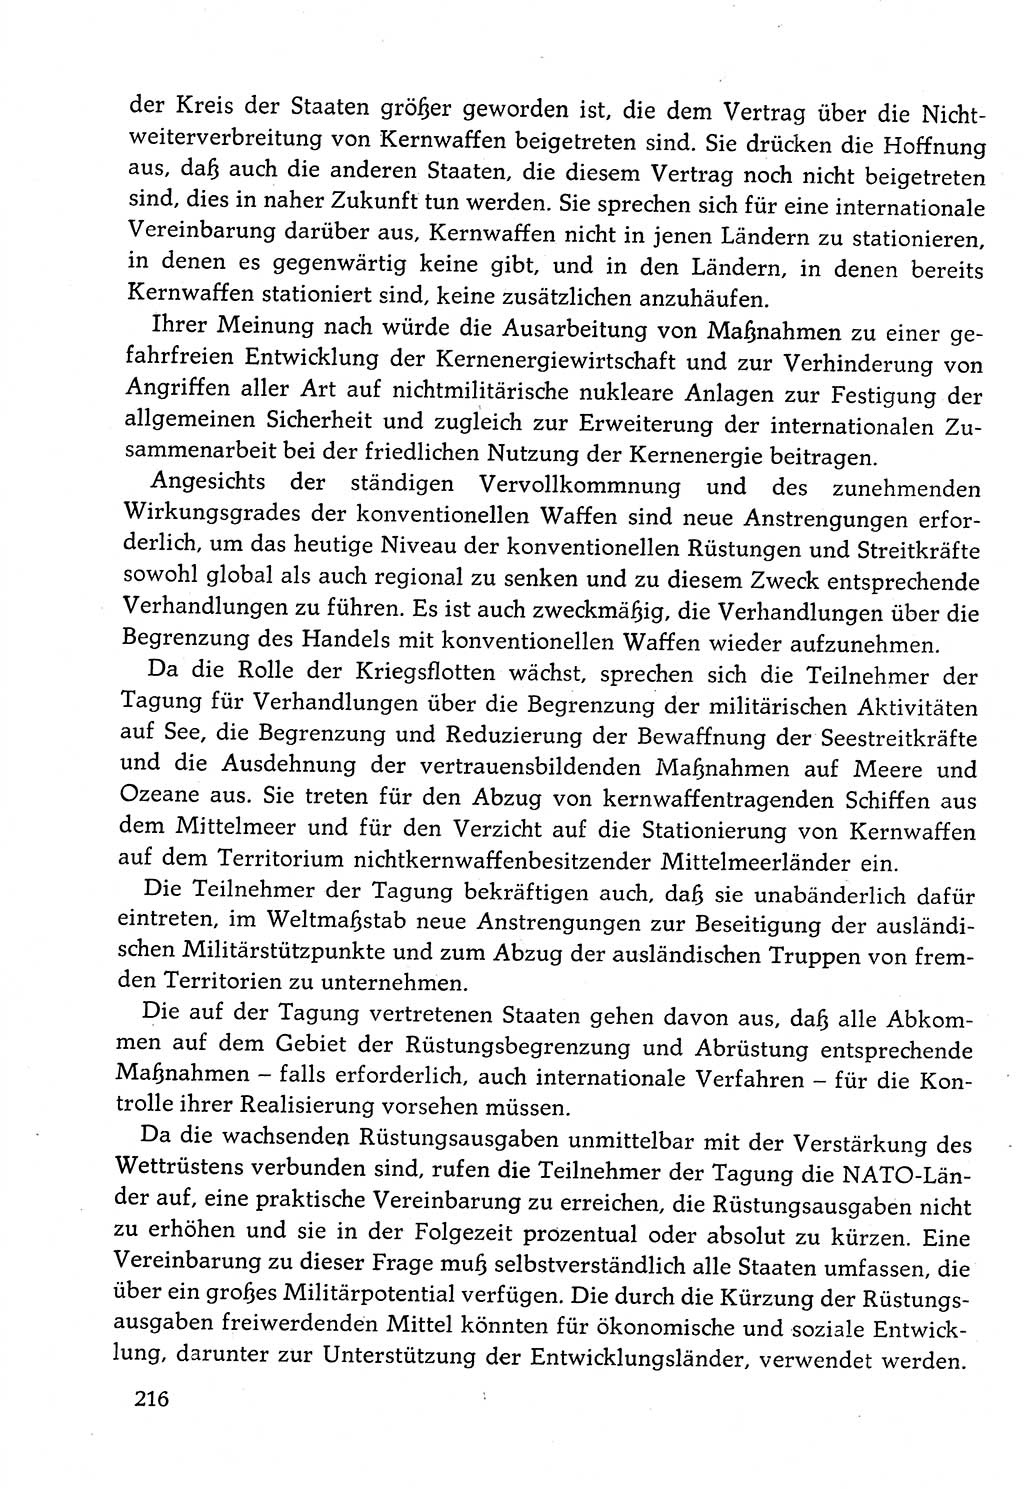 Dokumente der Sozialistischen Einheitspartei Deutschlands (SED) [Deutsche Demokratische Republik (DDR)] 1982-1983, Seite 216 (Dok. SED DDR 1982-1983, S. 216)